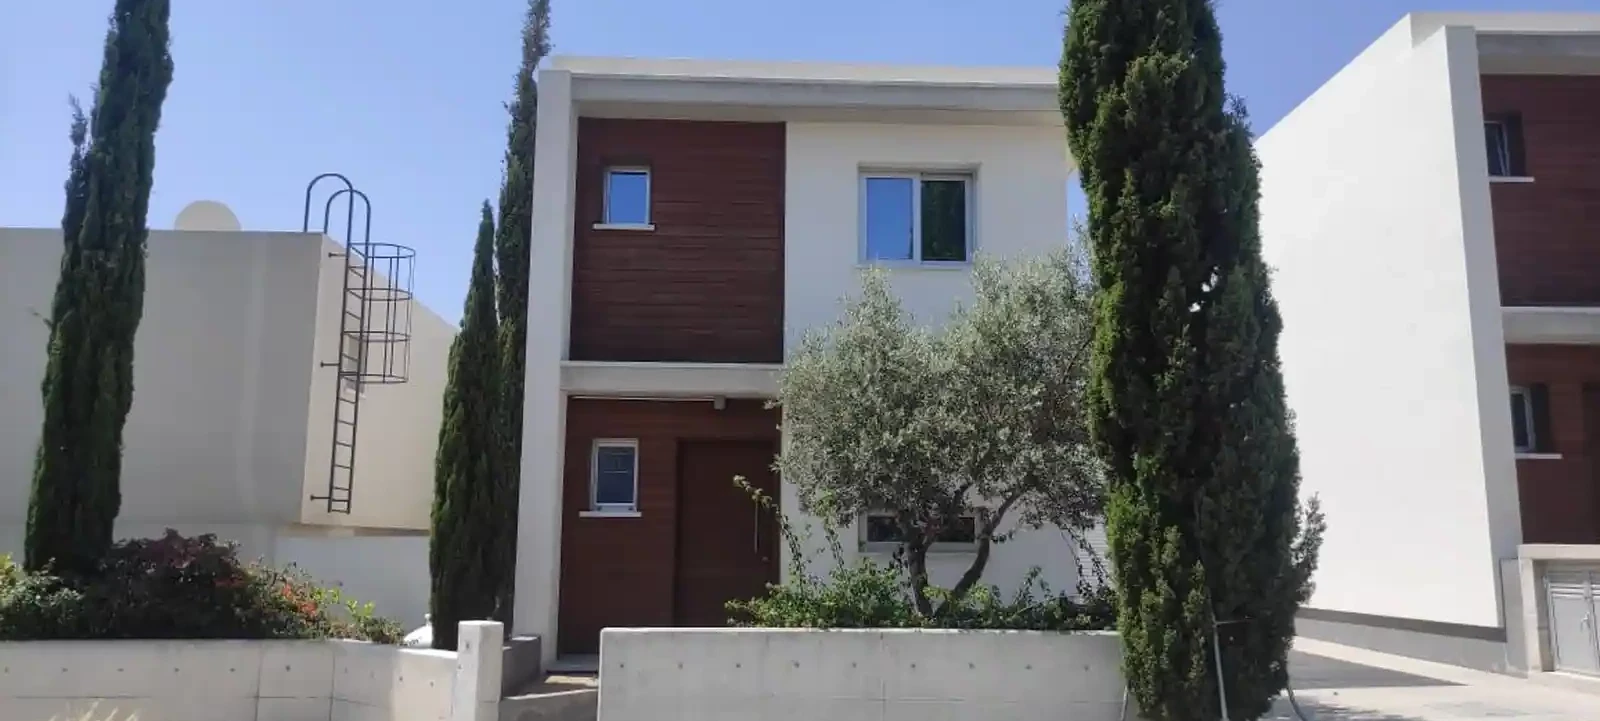 3-bedroom villa to rent €1.550, image 1